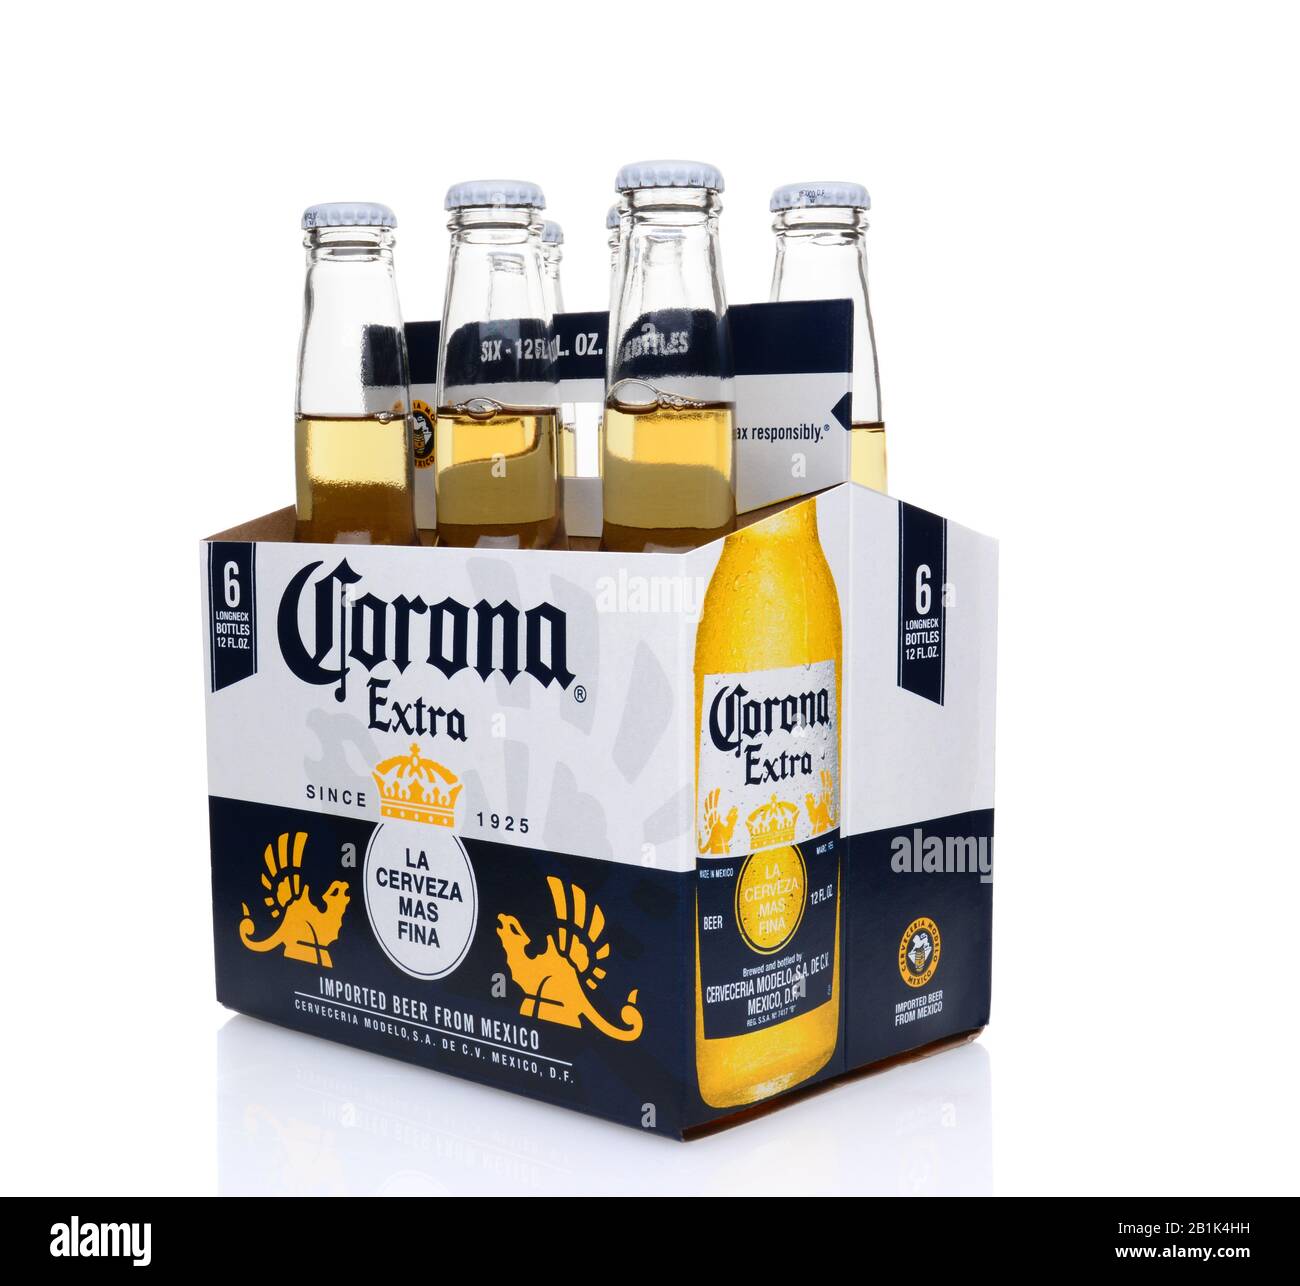 Irvine, CA - 25. MAI 2014: Ein 6er Pack Corona Extra Bier, 3/4-Ansicht. Corona ist das beliebteste Importbier in den Vereinigten Staaten. Stockfoto